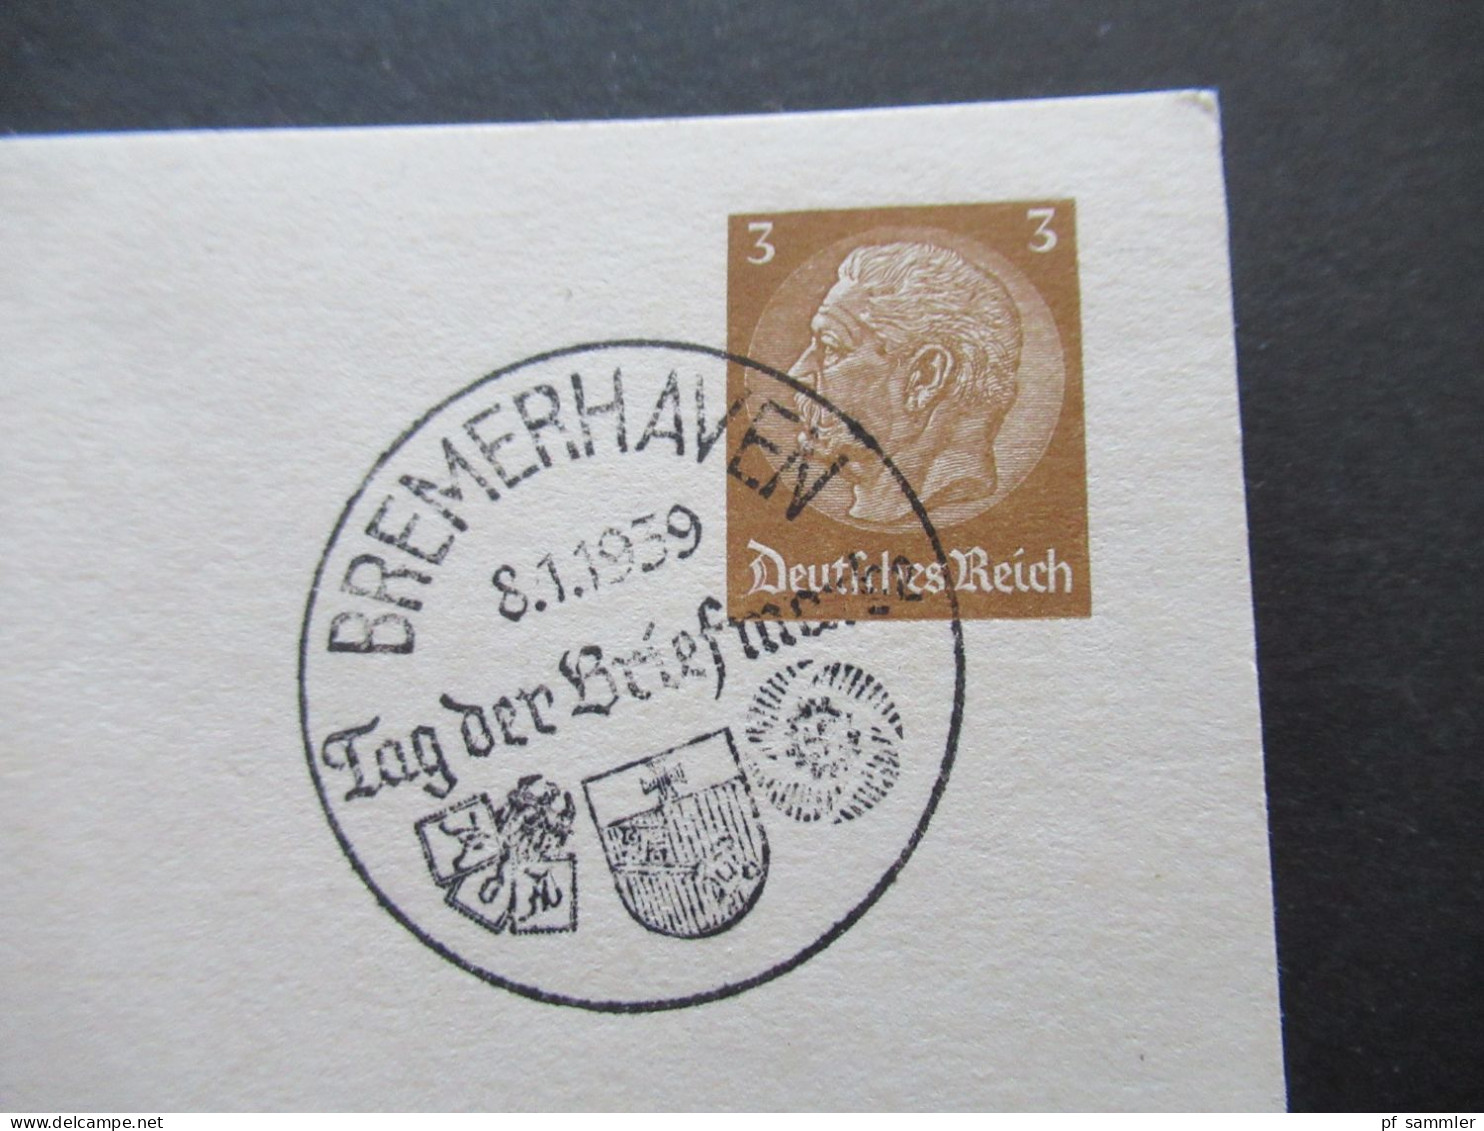 1939 Tag Der Briefmarke Sonder PK P 239 / 01 Mit Sonderstempel Bremerhaven Tag Der Briefmarke Reichsbund Der Philatelist - Briefkaarten